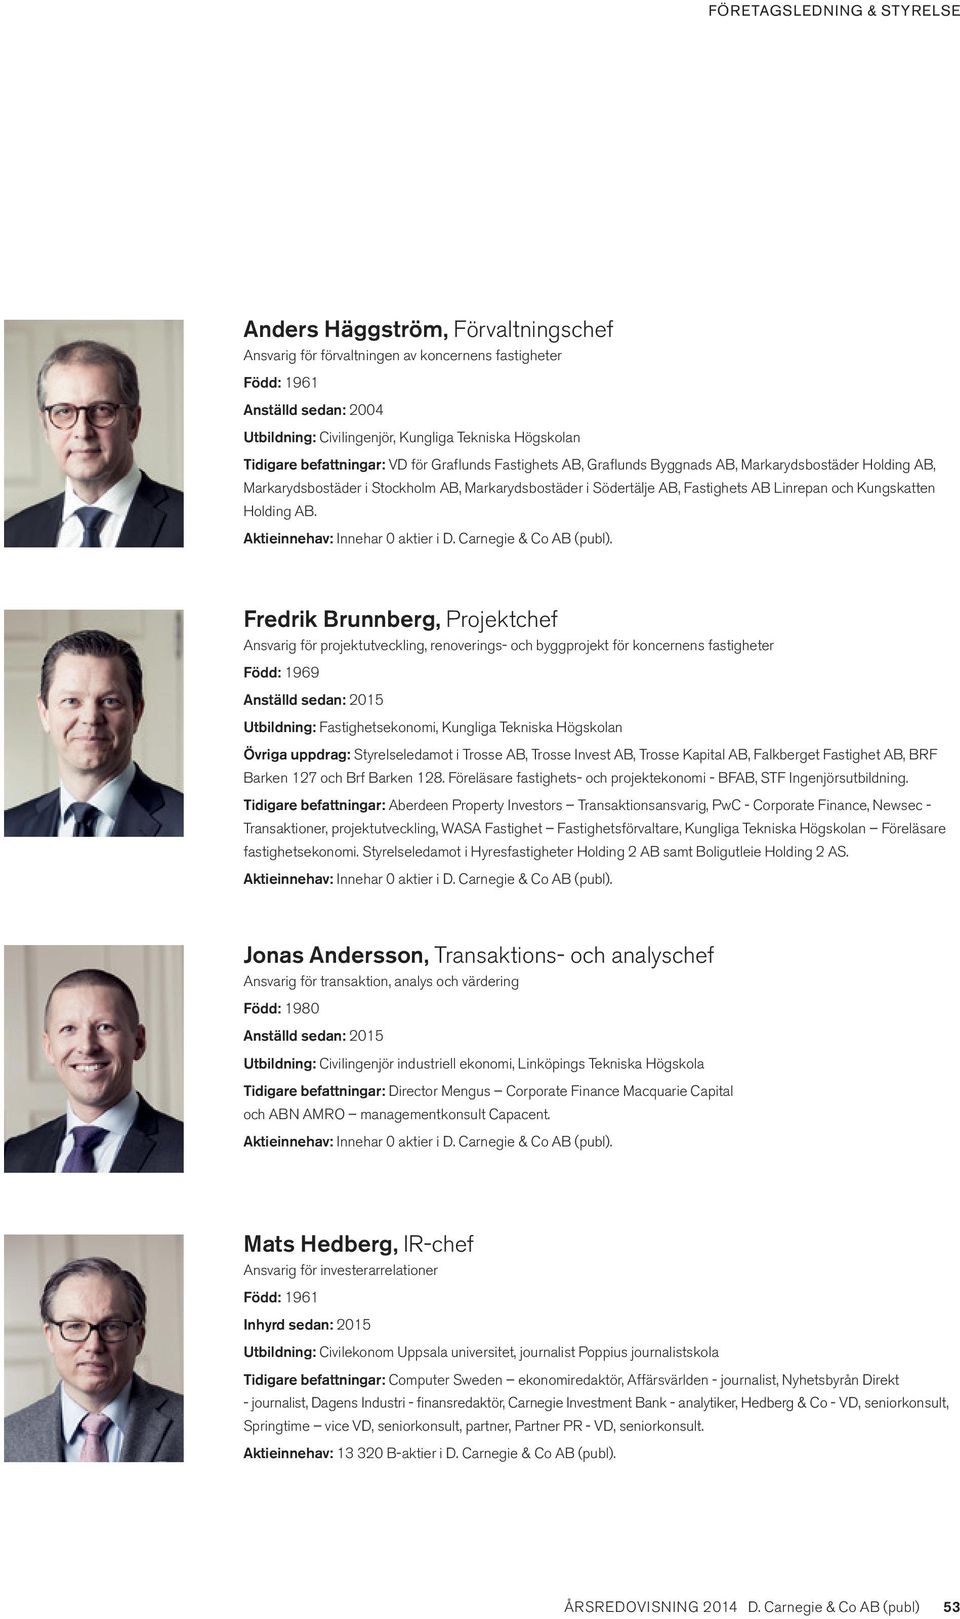 AB Linrepan och Kungskatten Holding AB. Aktieinnehav: Innehar 0 aktier i D. Carnegie & Co AB (publ).